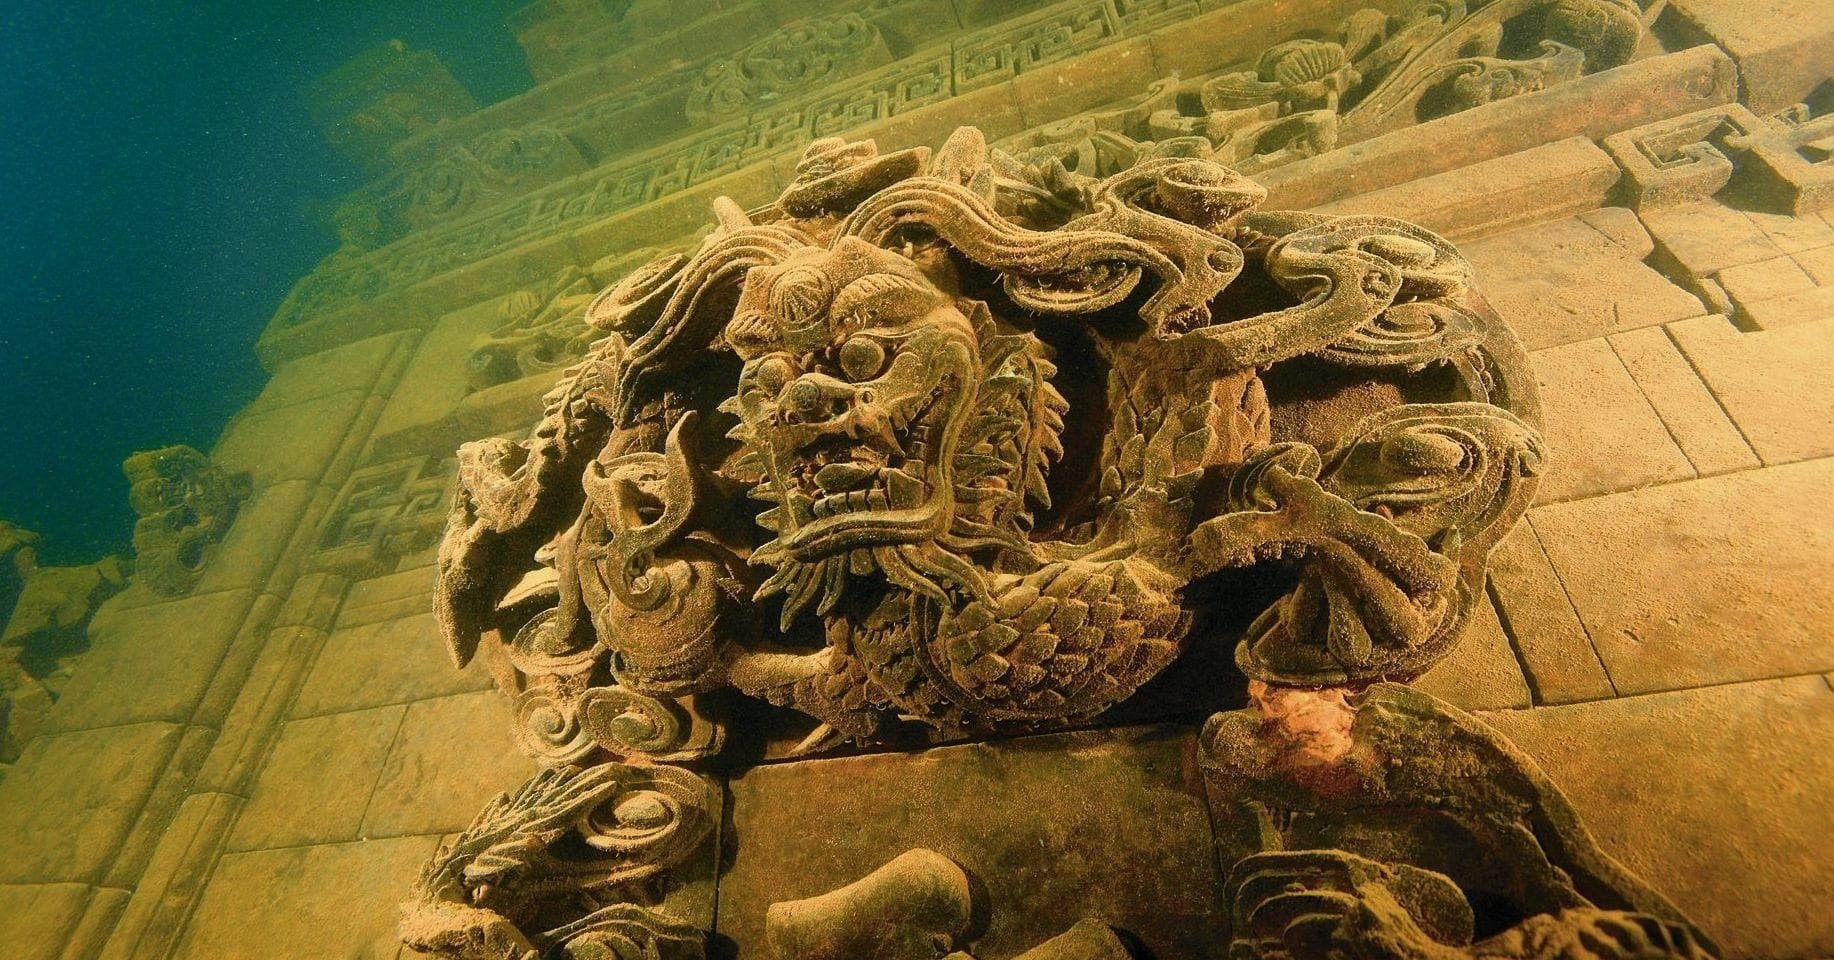 Atlantis của Trung Quốc - 'Shi Cheng', Thành phố cổ đại bị mất tích dưới nước - Ảnh 6.